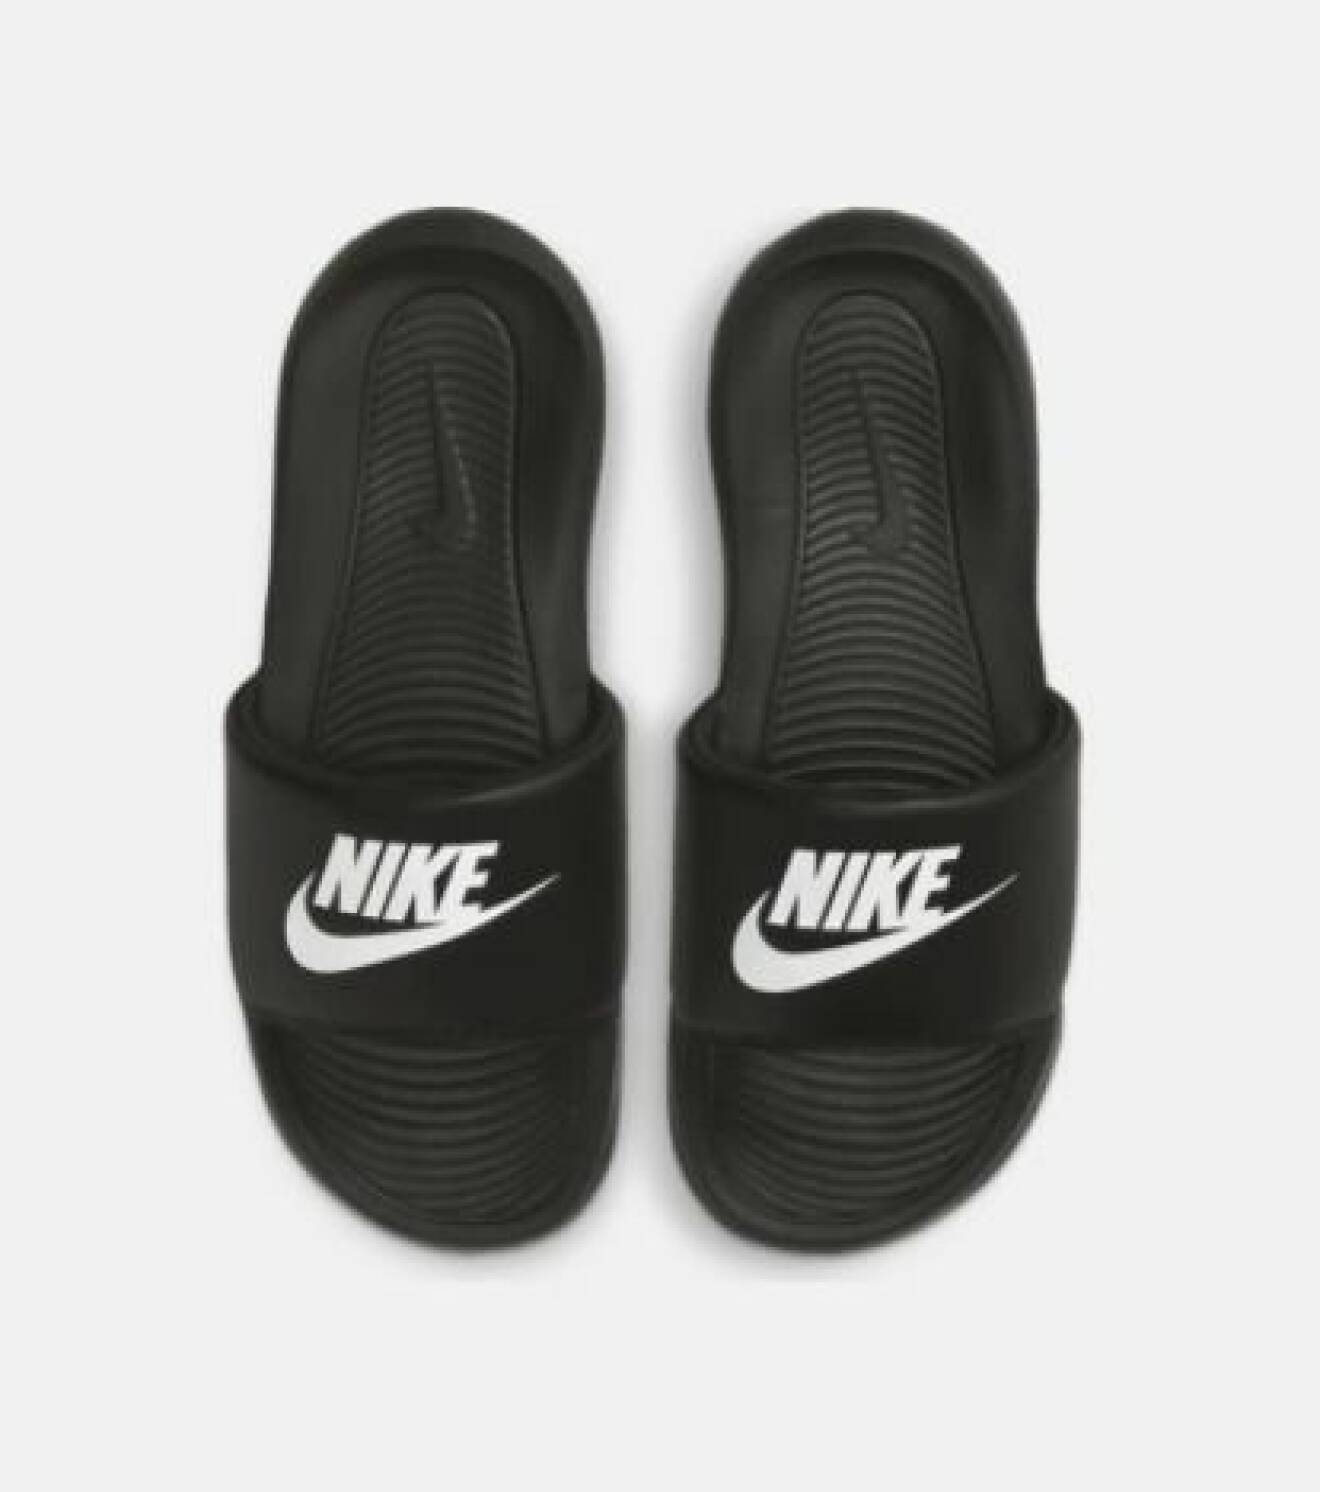 Svarta badtofflor med logga. Badtofflor från Nike.